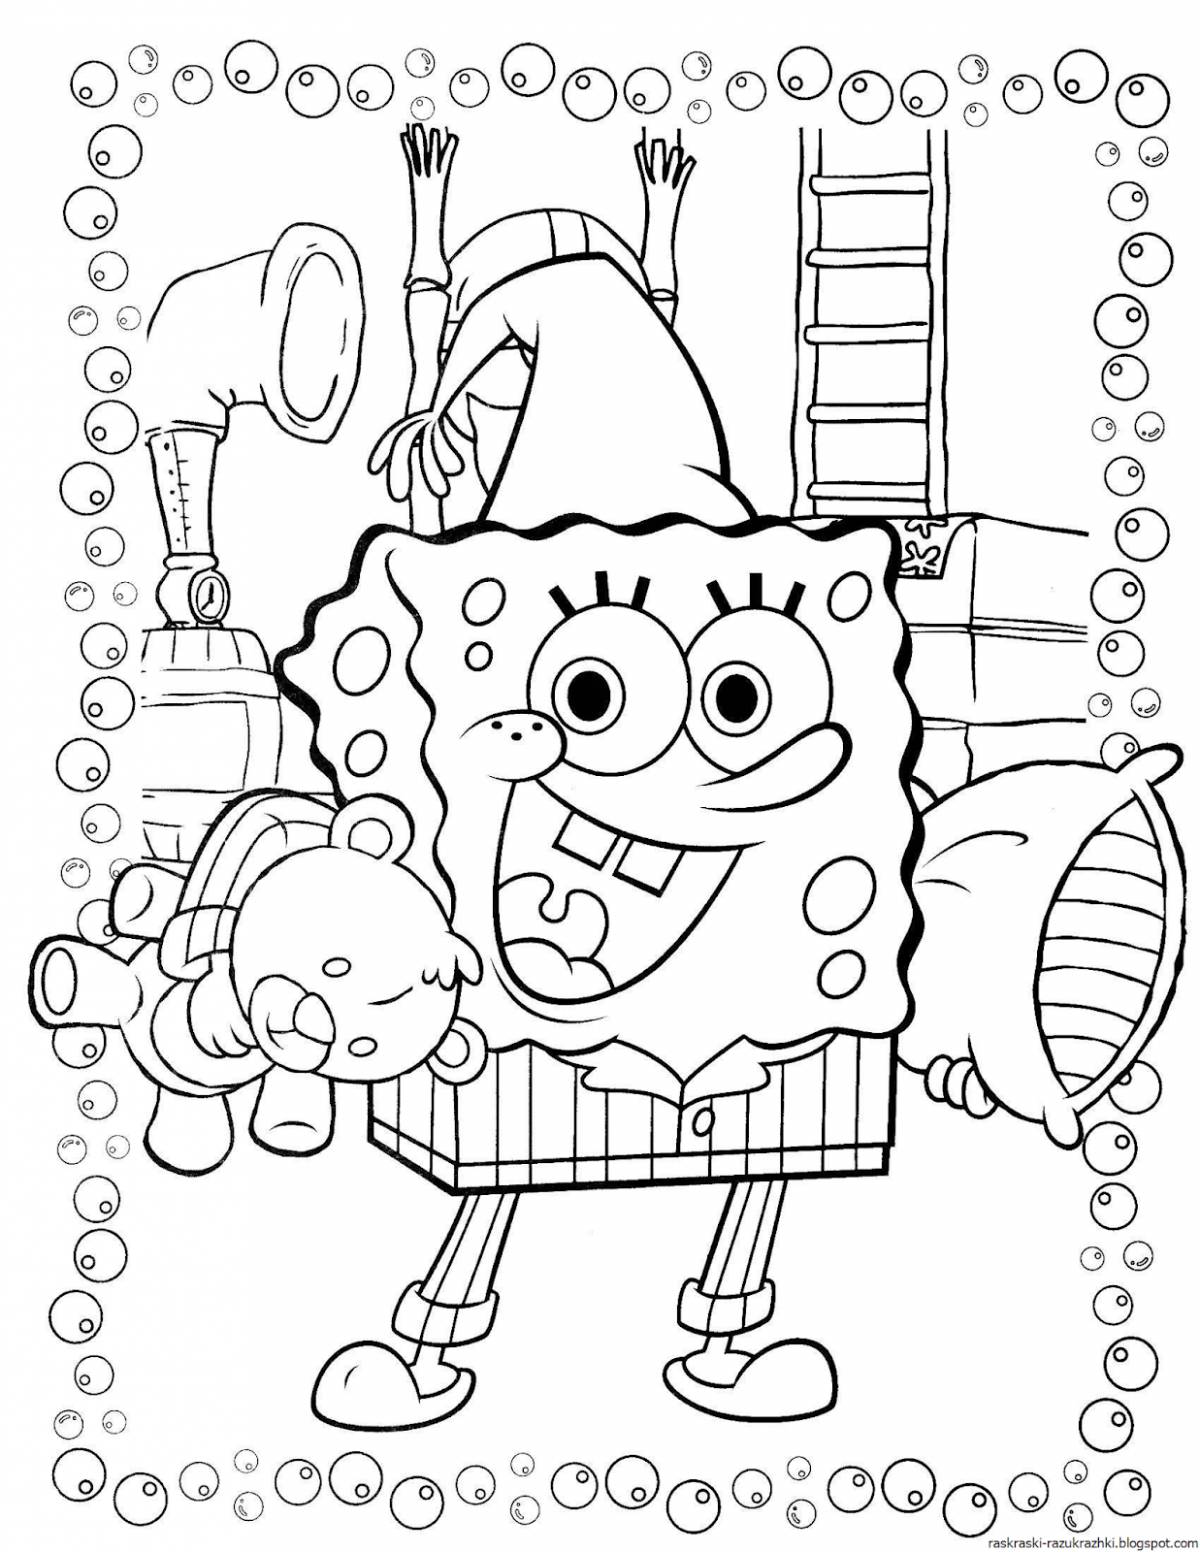 Fun coloring spongebob